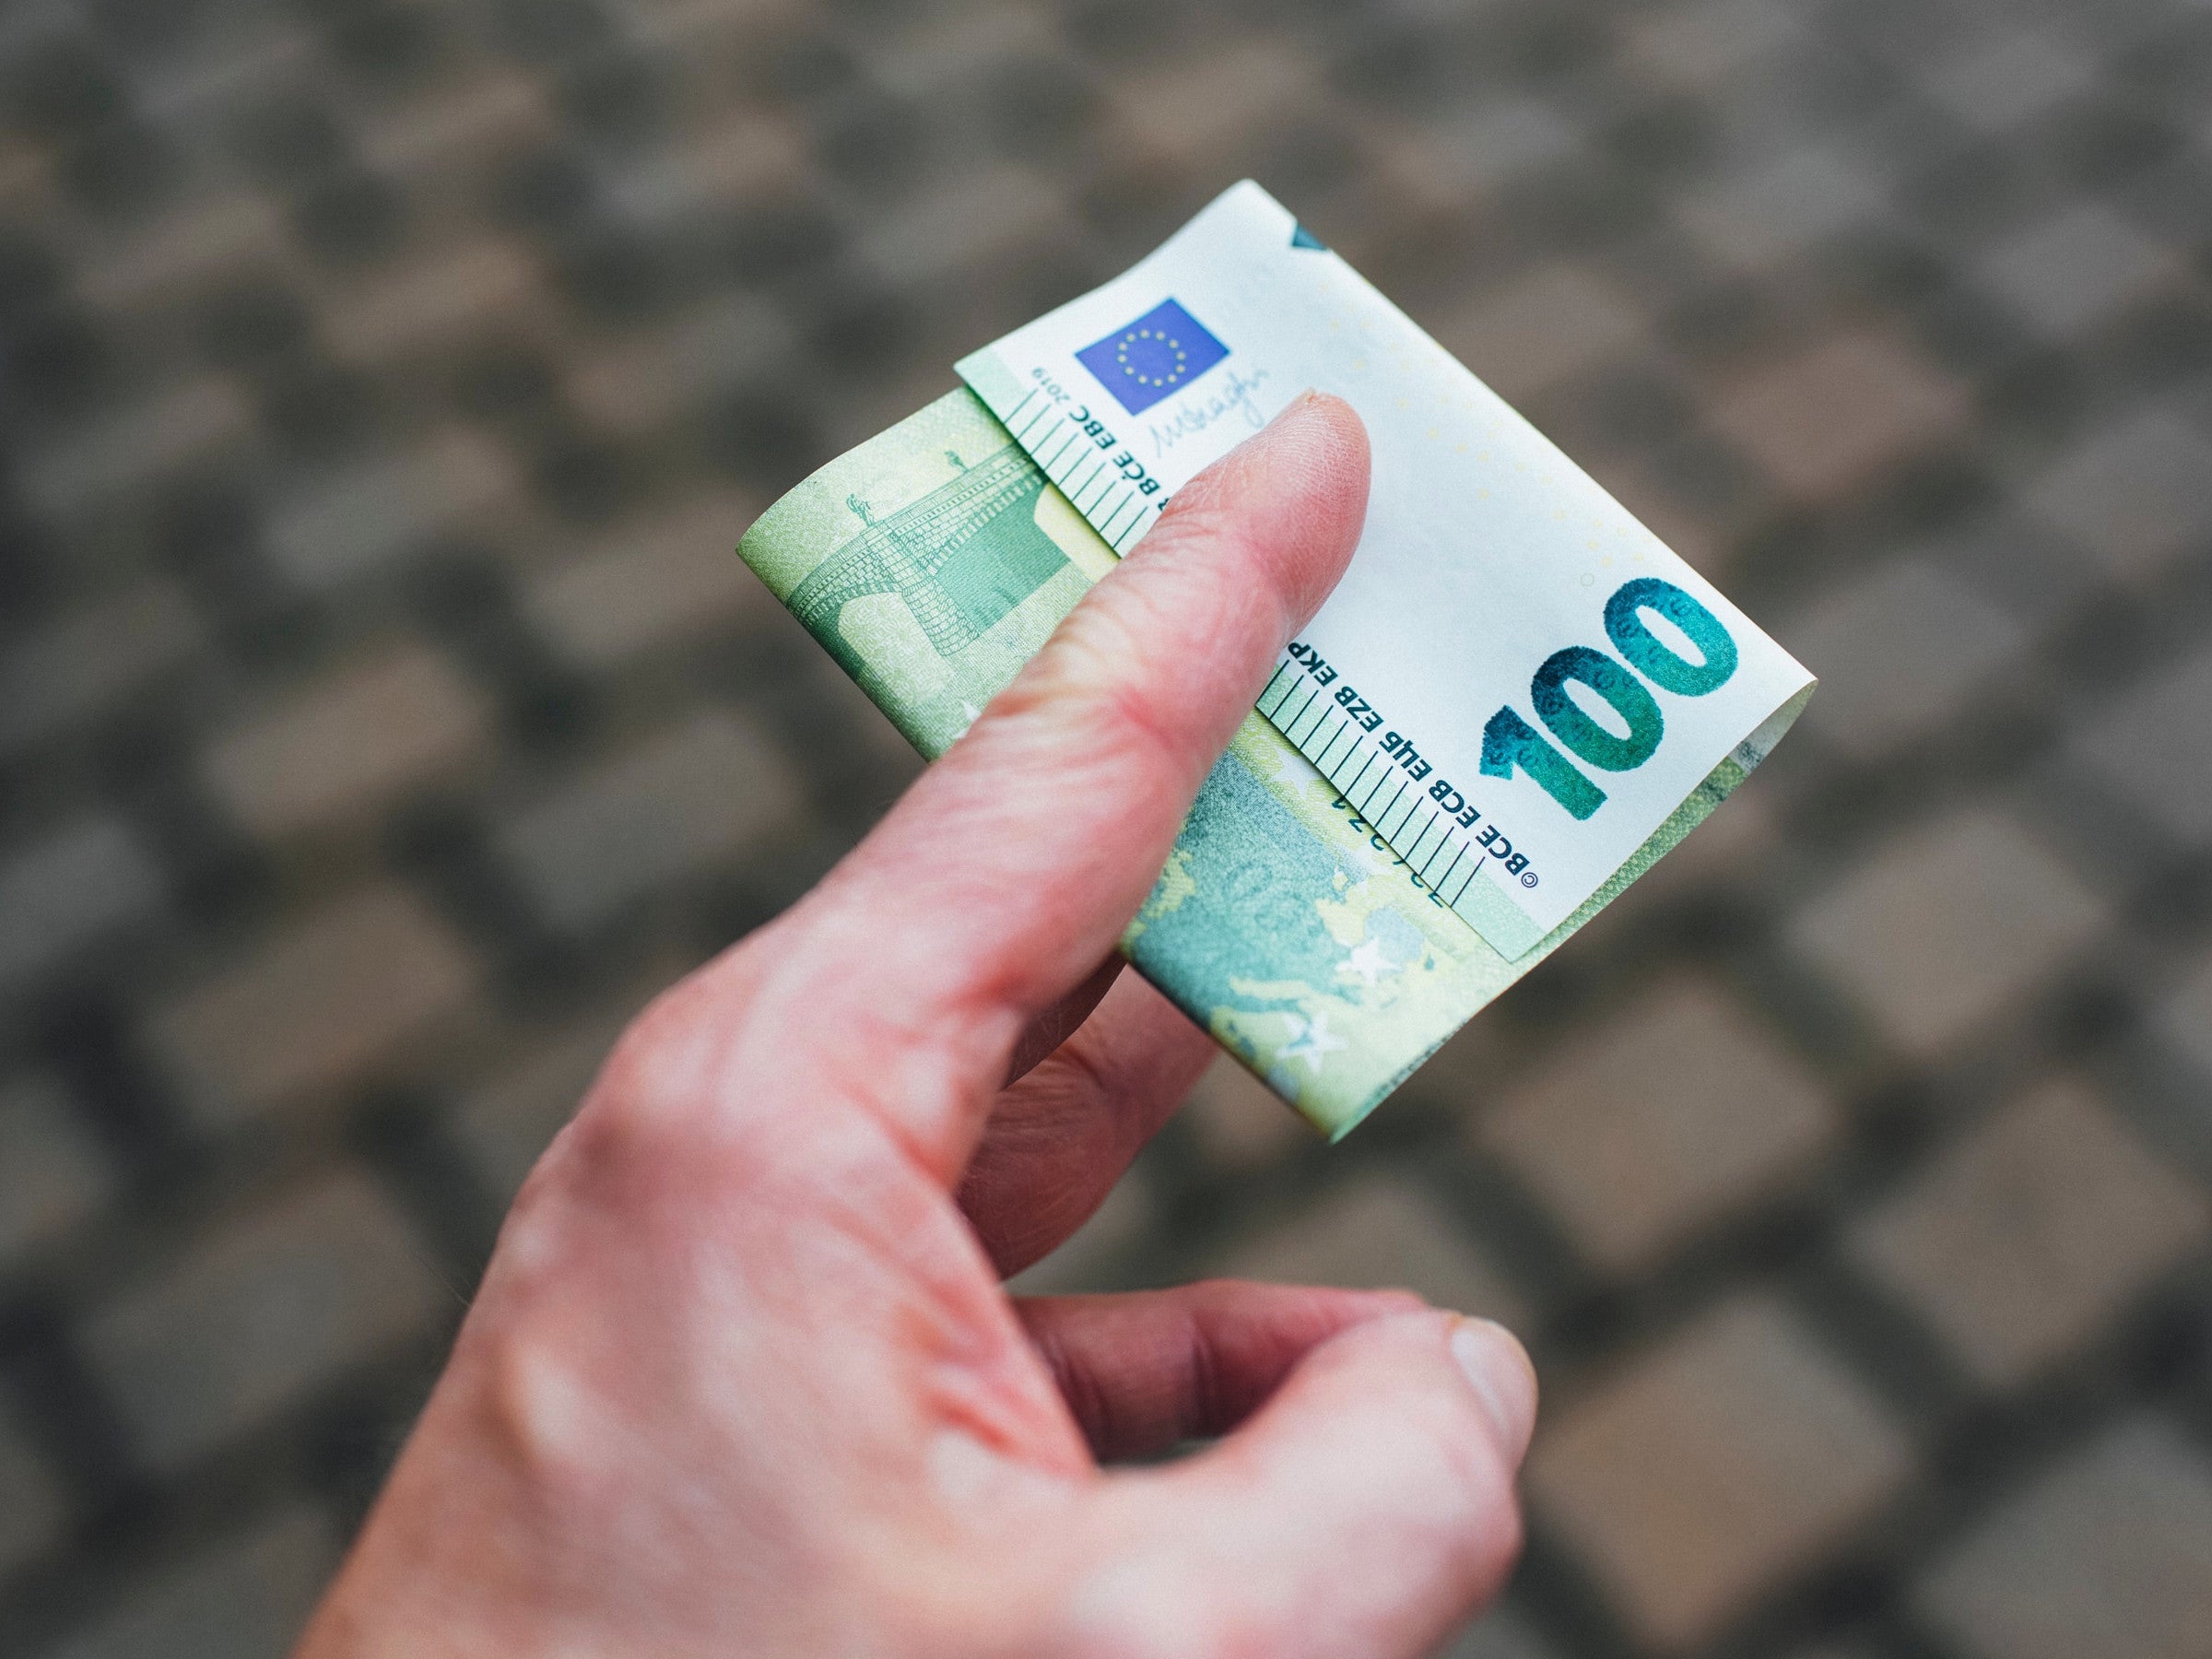 #Überraschung: Fast eine Million Deutsche bekommen 100 Euro geschenkt